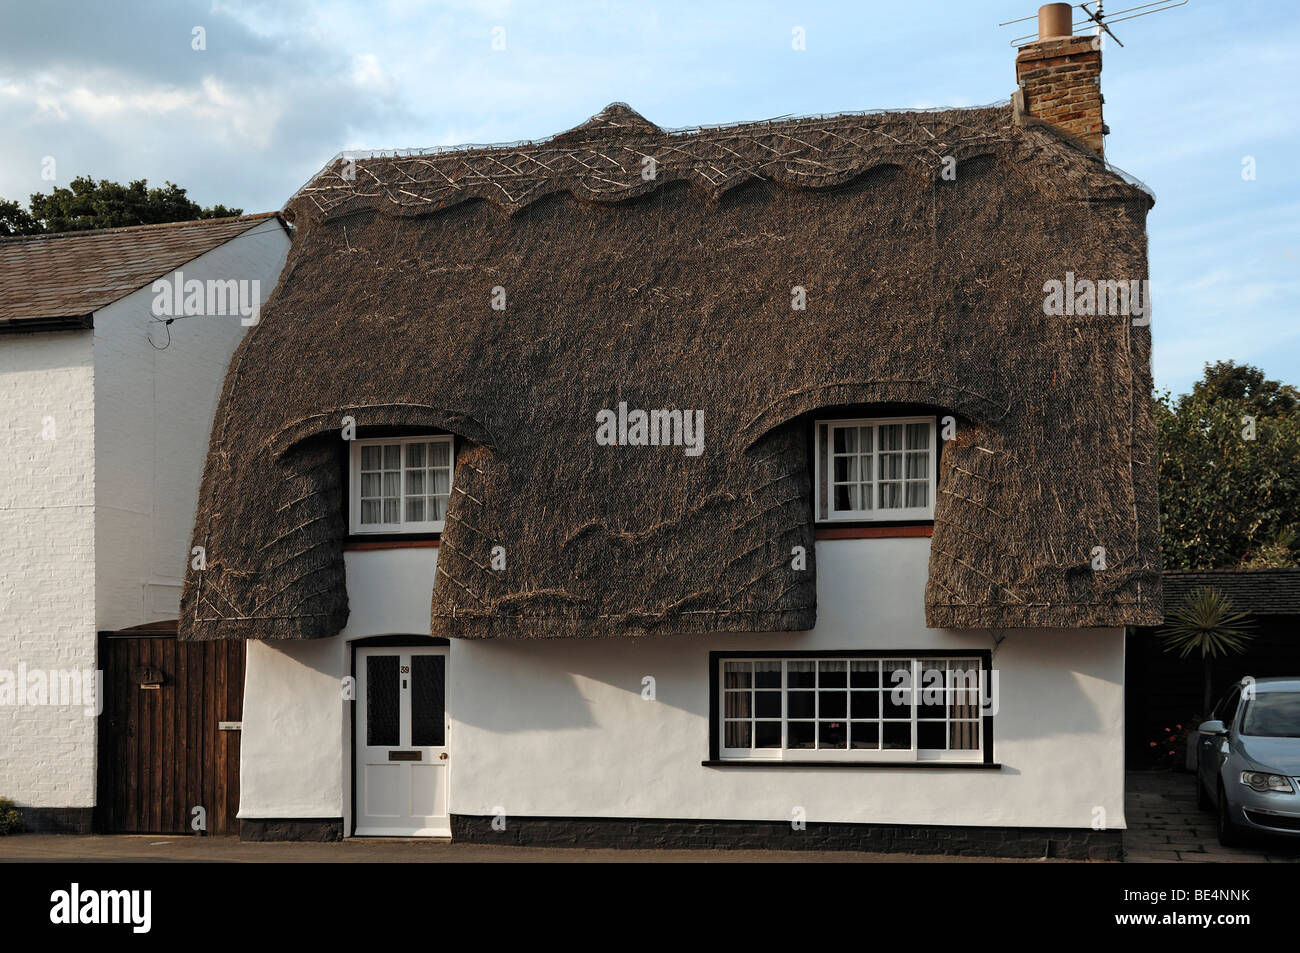 Alte reetgedeckte Haus, High Street, Hemingford Gray, Cambridgeshire, England, Vereinigtes Königreich, Europa Stockfoto